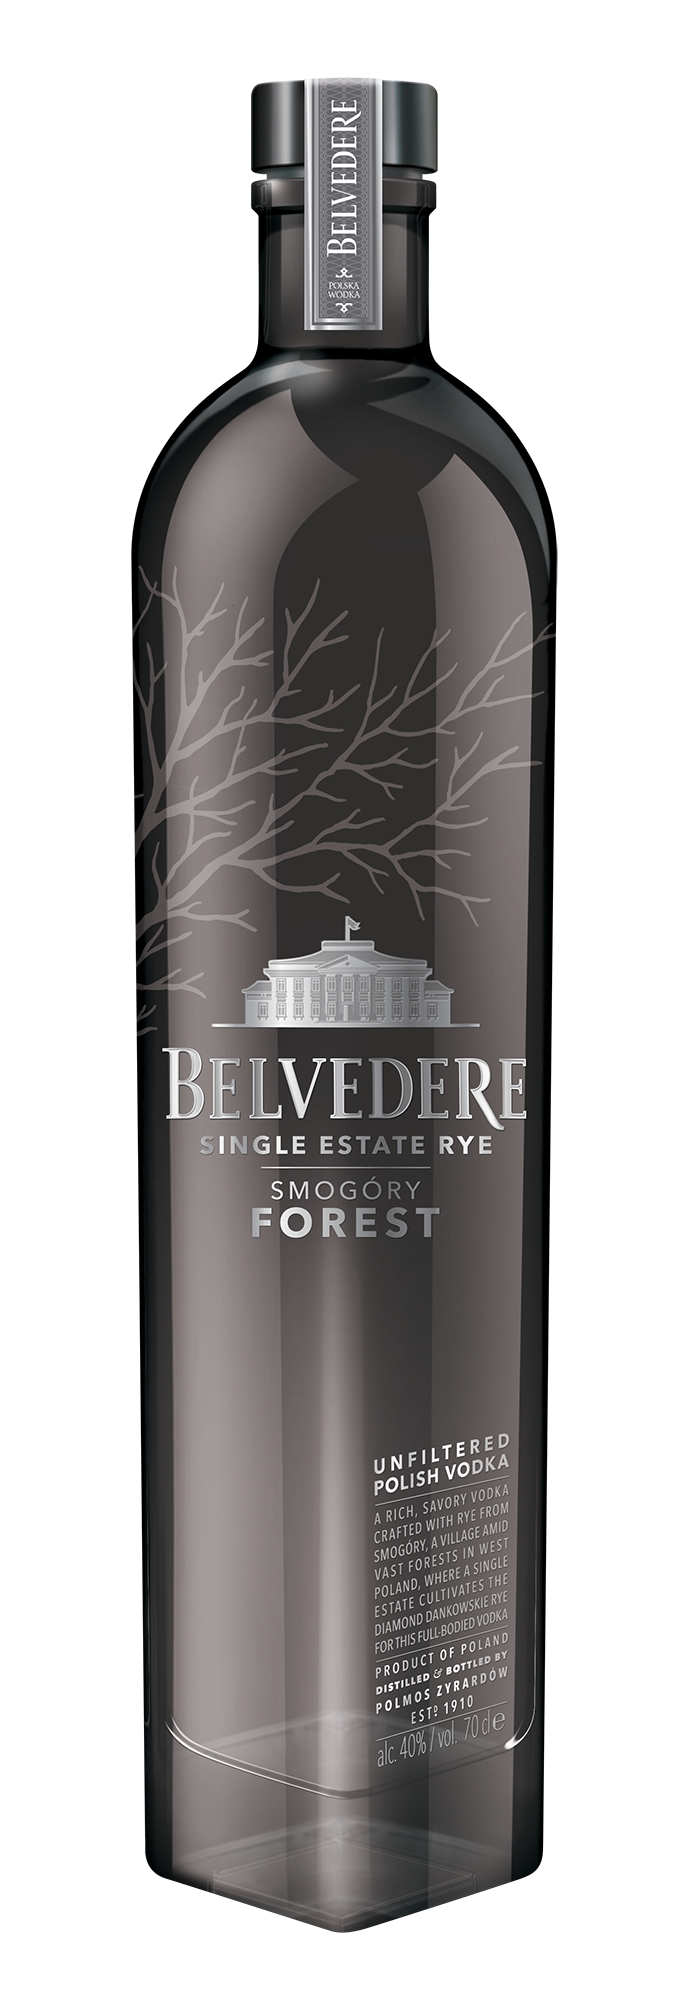 Belvedere vodka – Sovereignty Wines